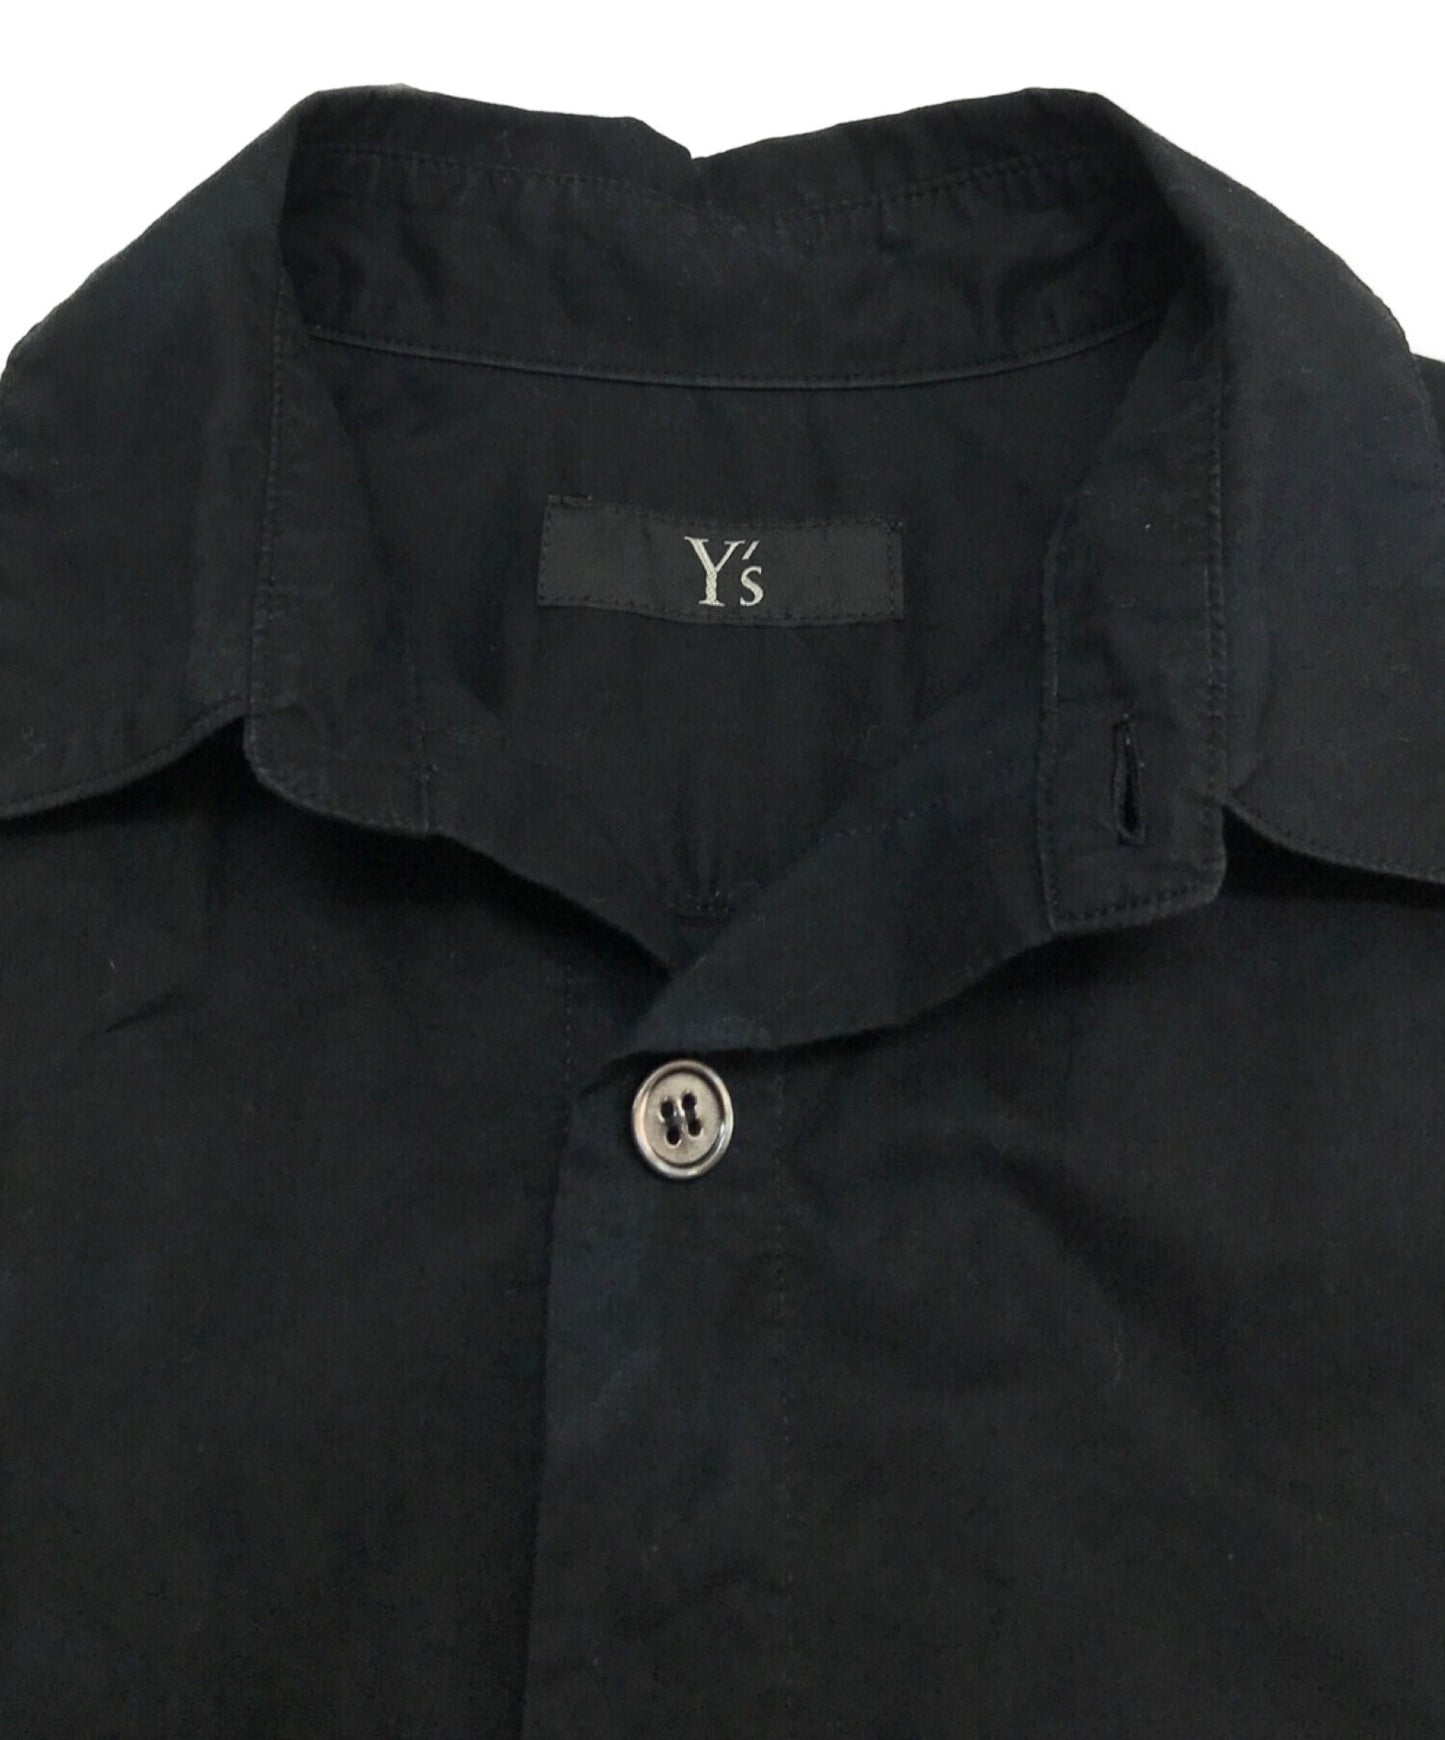 เสื้อยาวของ Y / เสื้อแขนยาว / เสื้อออกแบบ / เสื้อเบลาส์ / เสื้อทึบ YX-B08-001